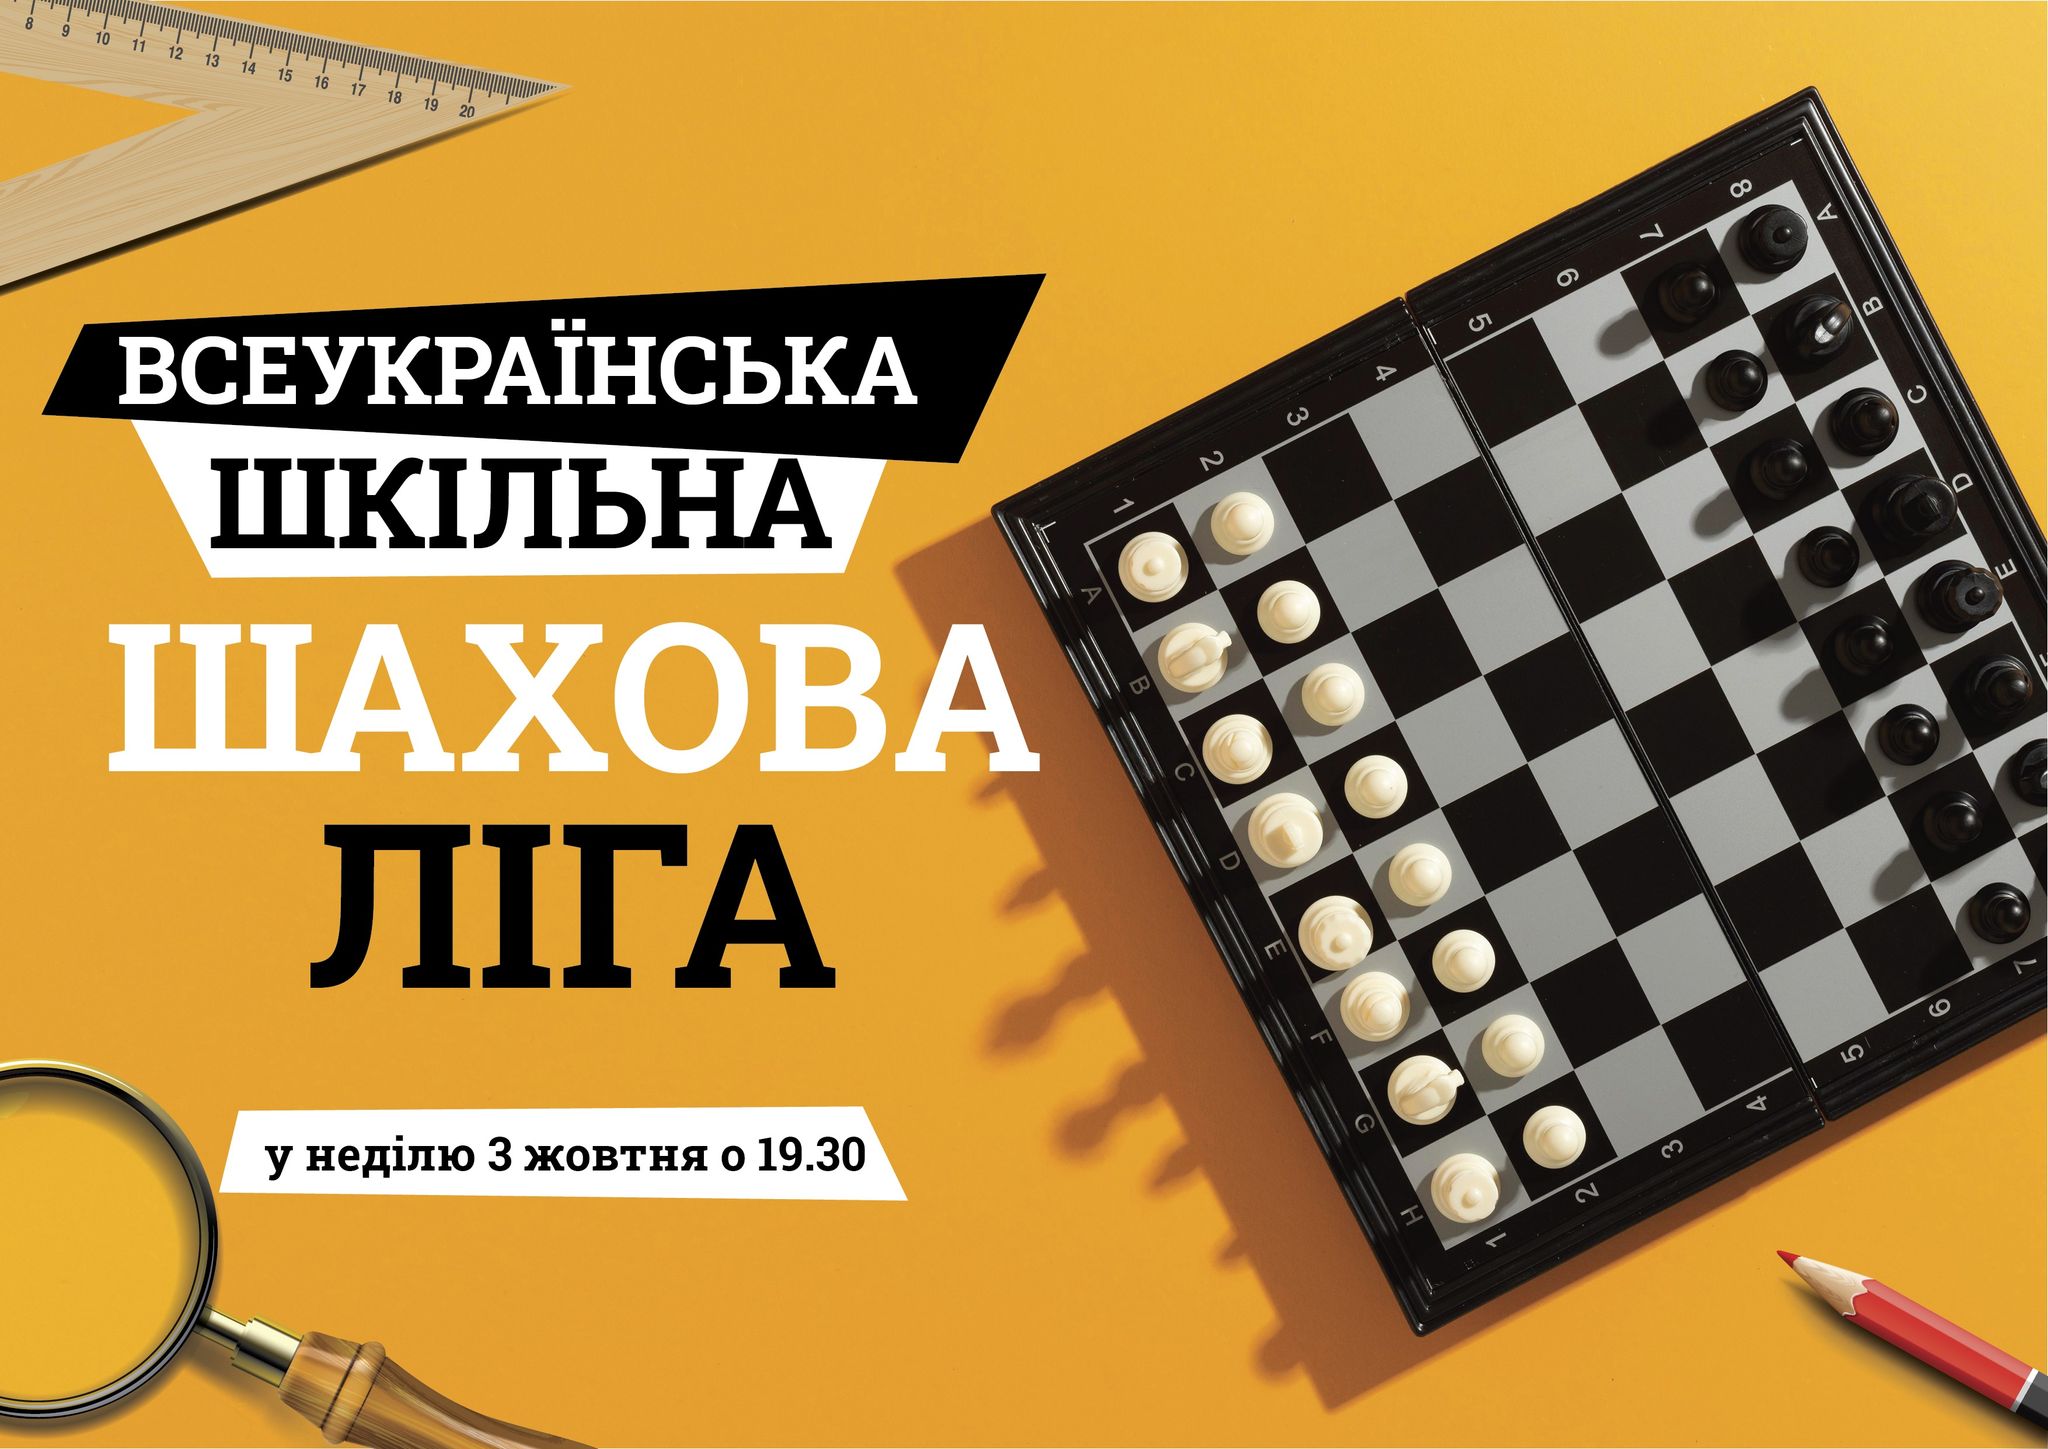 Вторые соревнования второго шахматного года 2021/22 «Всеукраїнська шкільна шахова ліга» (сезон октябрь-декабрь 2021 г.)